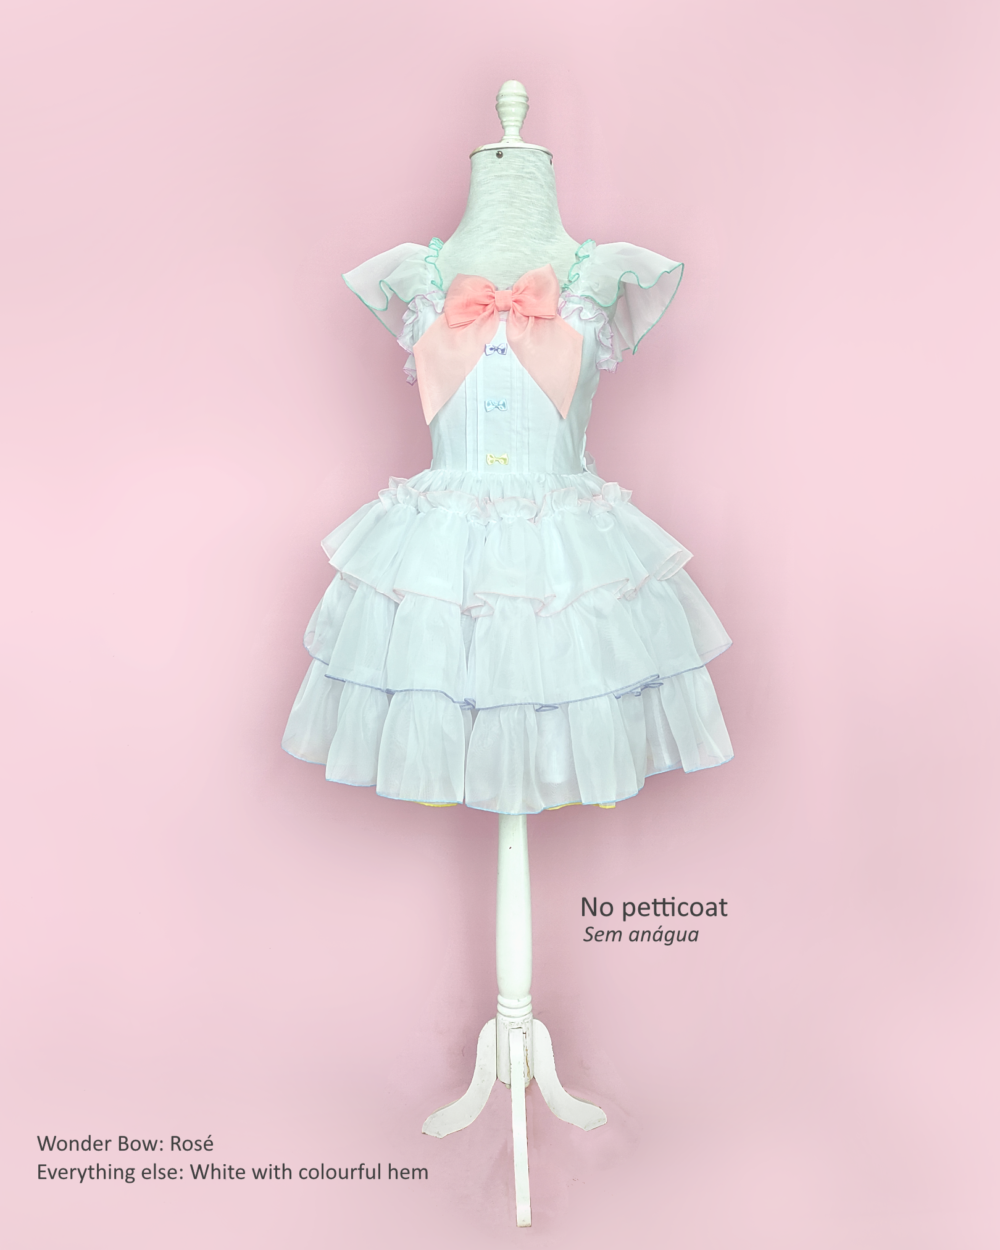 Ruffled Jumperskirt Dress by MeLikesTea Hybrid Poof Monster Dress